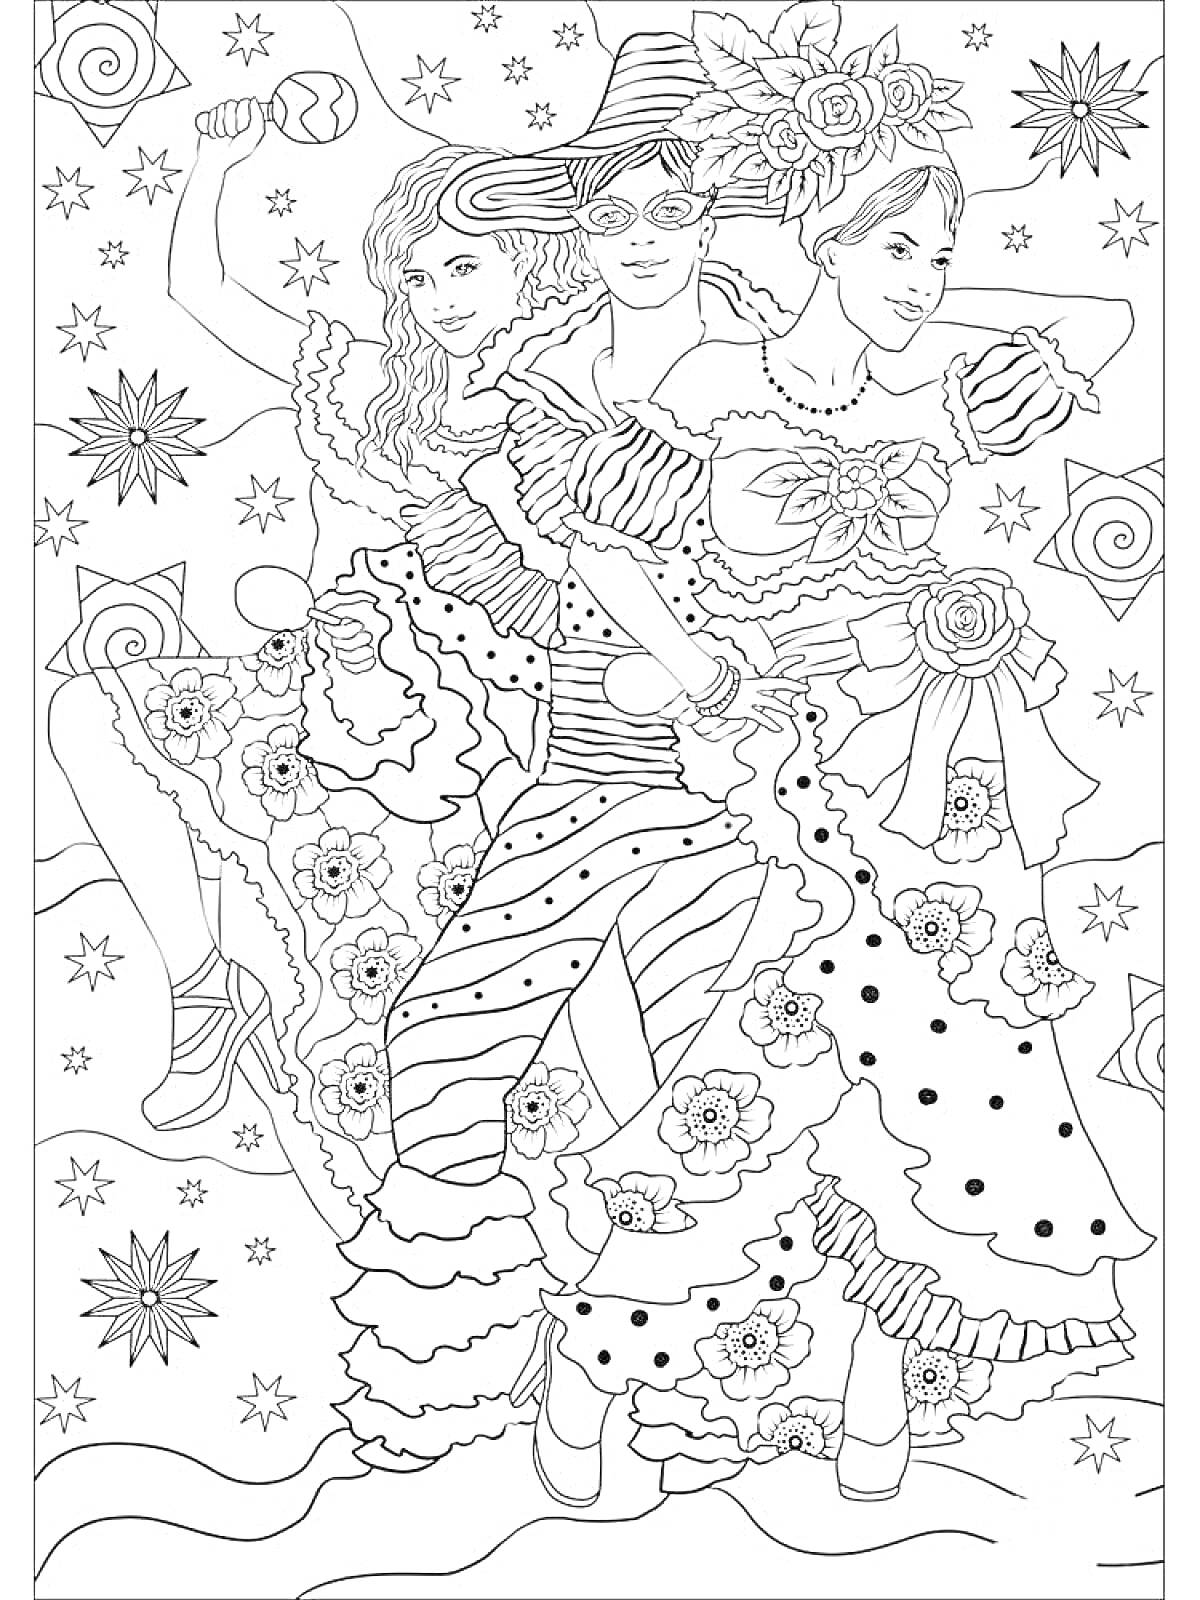 Раскраска Три женщины в карнавальных нарядах с цветами и узорами, звезды и цветы на фоне